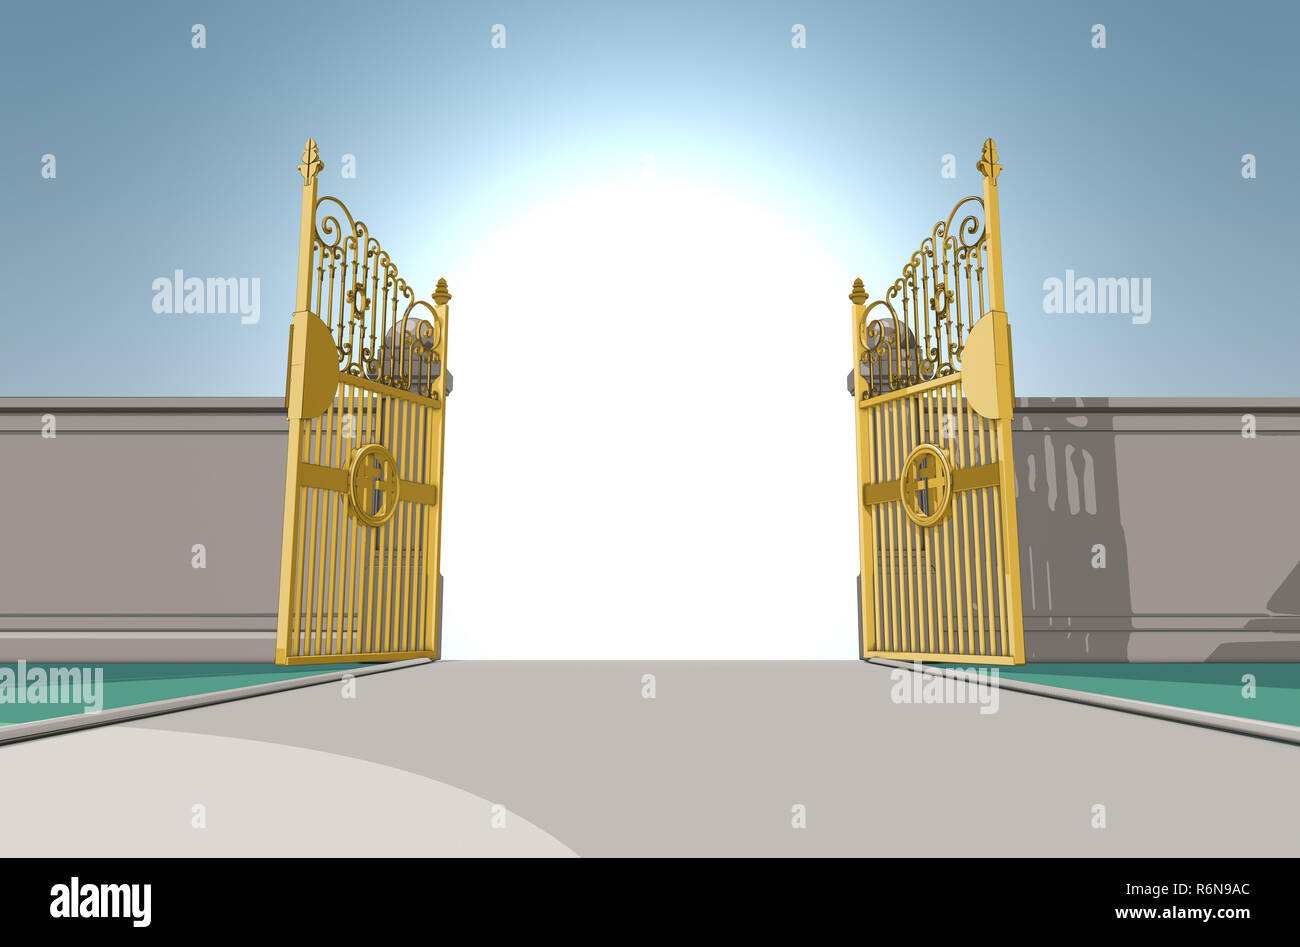 Eine bebilderte Darstellung der Goldenen pearly Gates der Himmel voll auf einem blauen Himmel Hintergrund - 3D-Render geöffnet Stockfoto